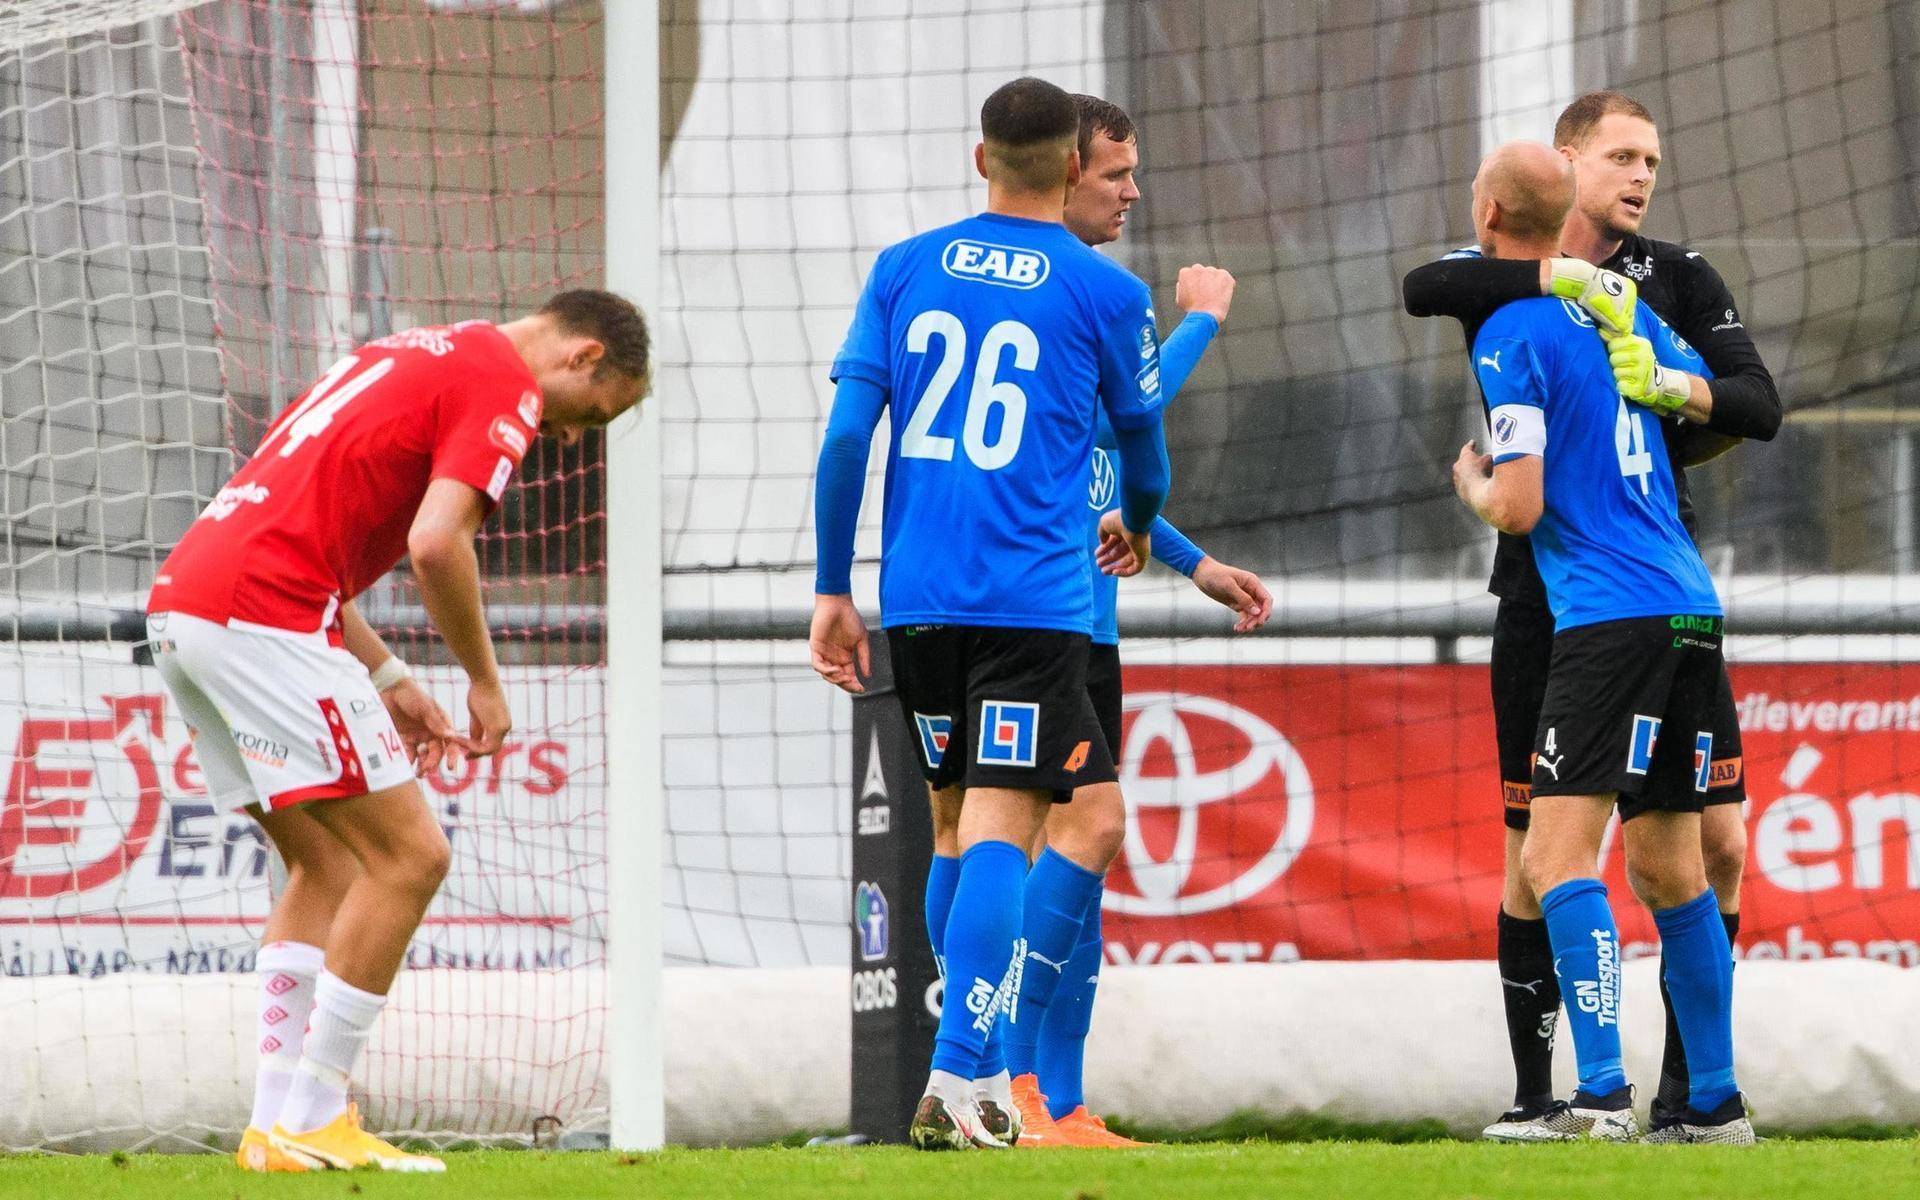 HBK:s målvakt Malkolm Nilsson Säfqvist och Andreas Johansson jublar ihop med Edvin Kurtulus och Alexander Berntsson efter segern i seriefinalen mot Degerfors.